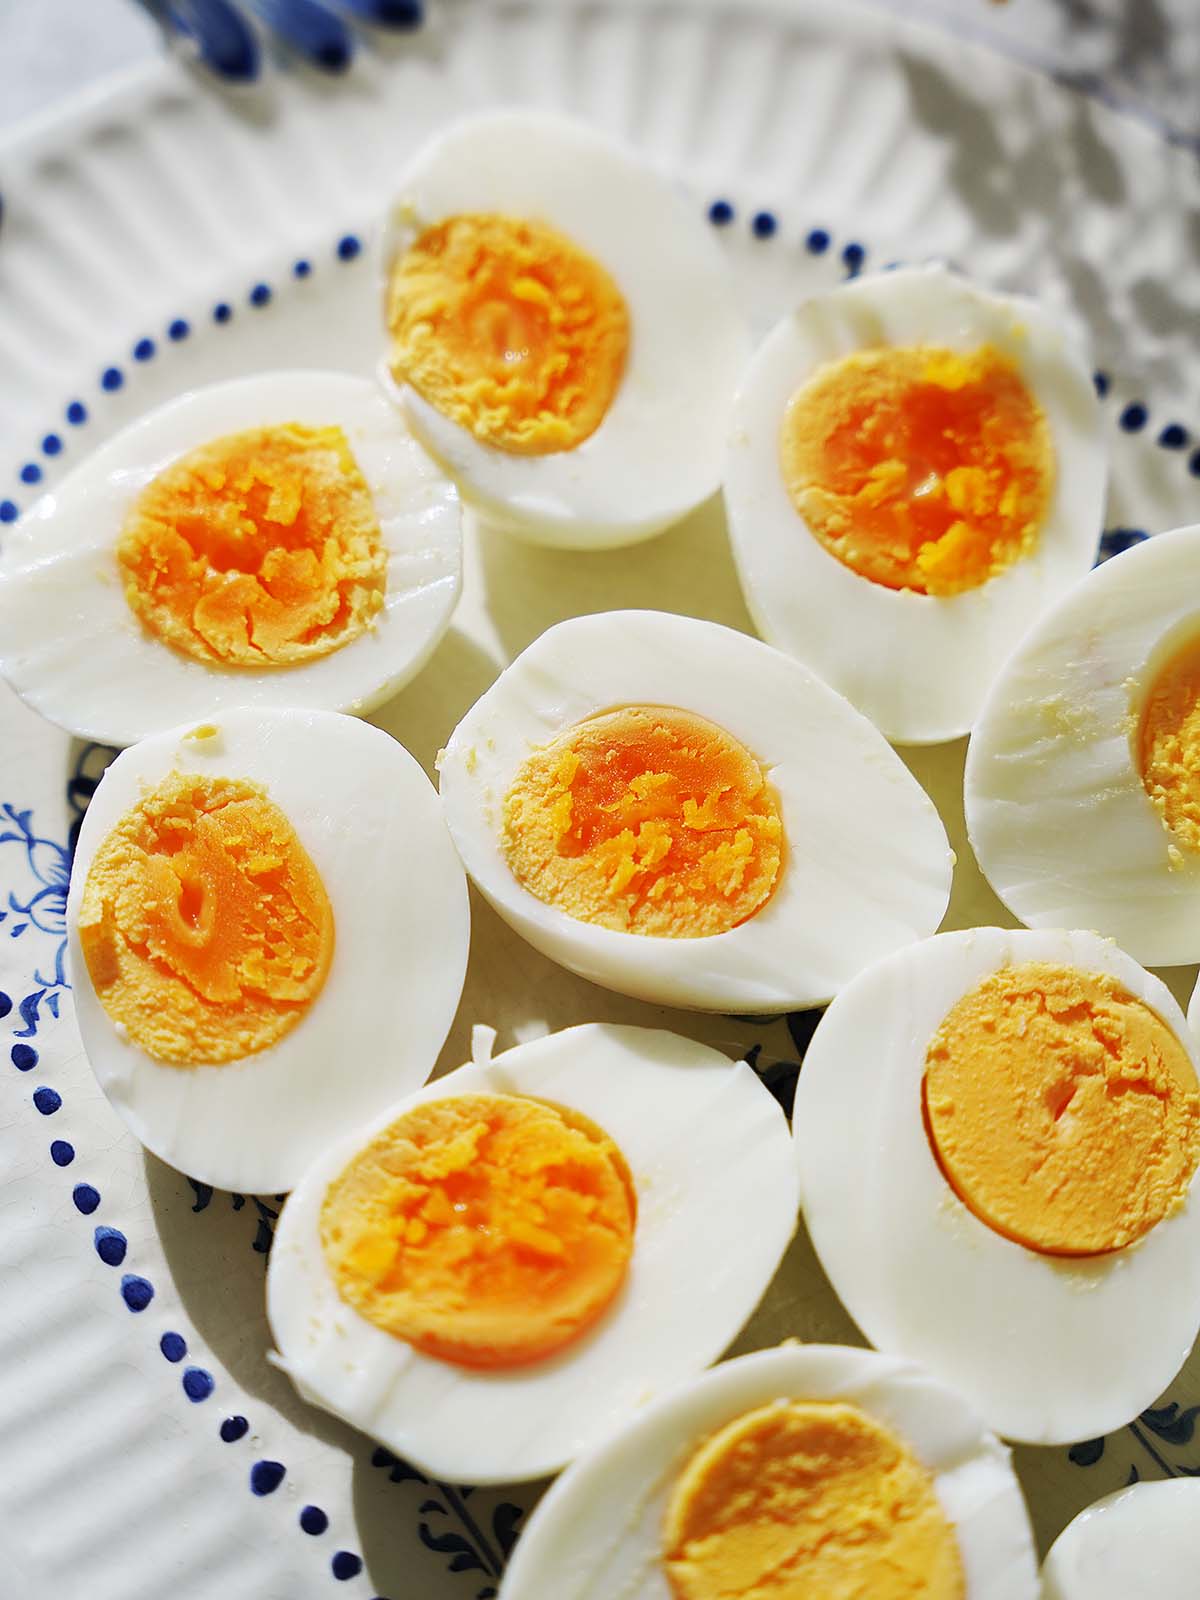 Huevos Cocidos (Boiled Eggs)